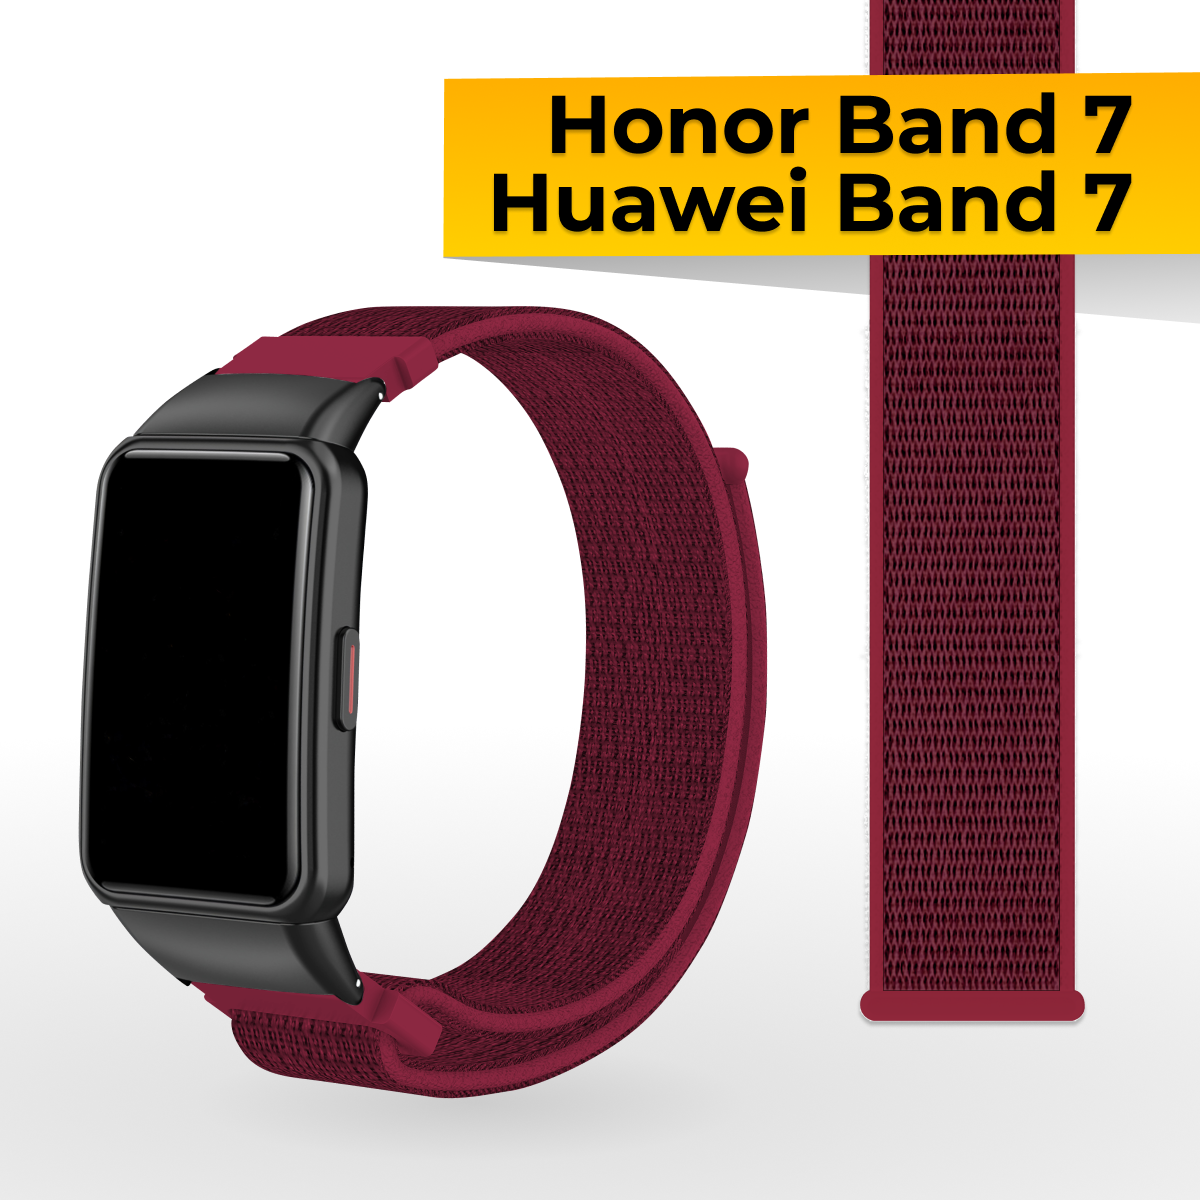 Нейлоновый ремешок для Huawei Band 7 и Honor Band 7 / Спортивный тканевый браслет на липучке для смарт часов Хуавей Бэнд 7 и Хонор Бэнд 7 / Малиновый